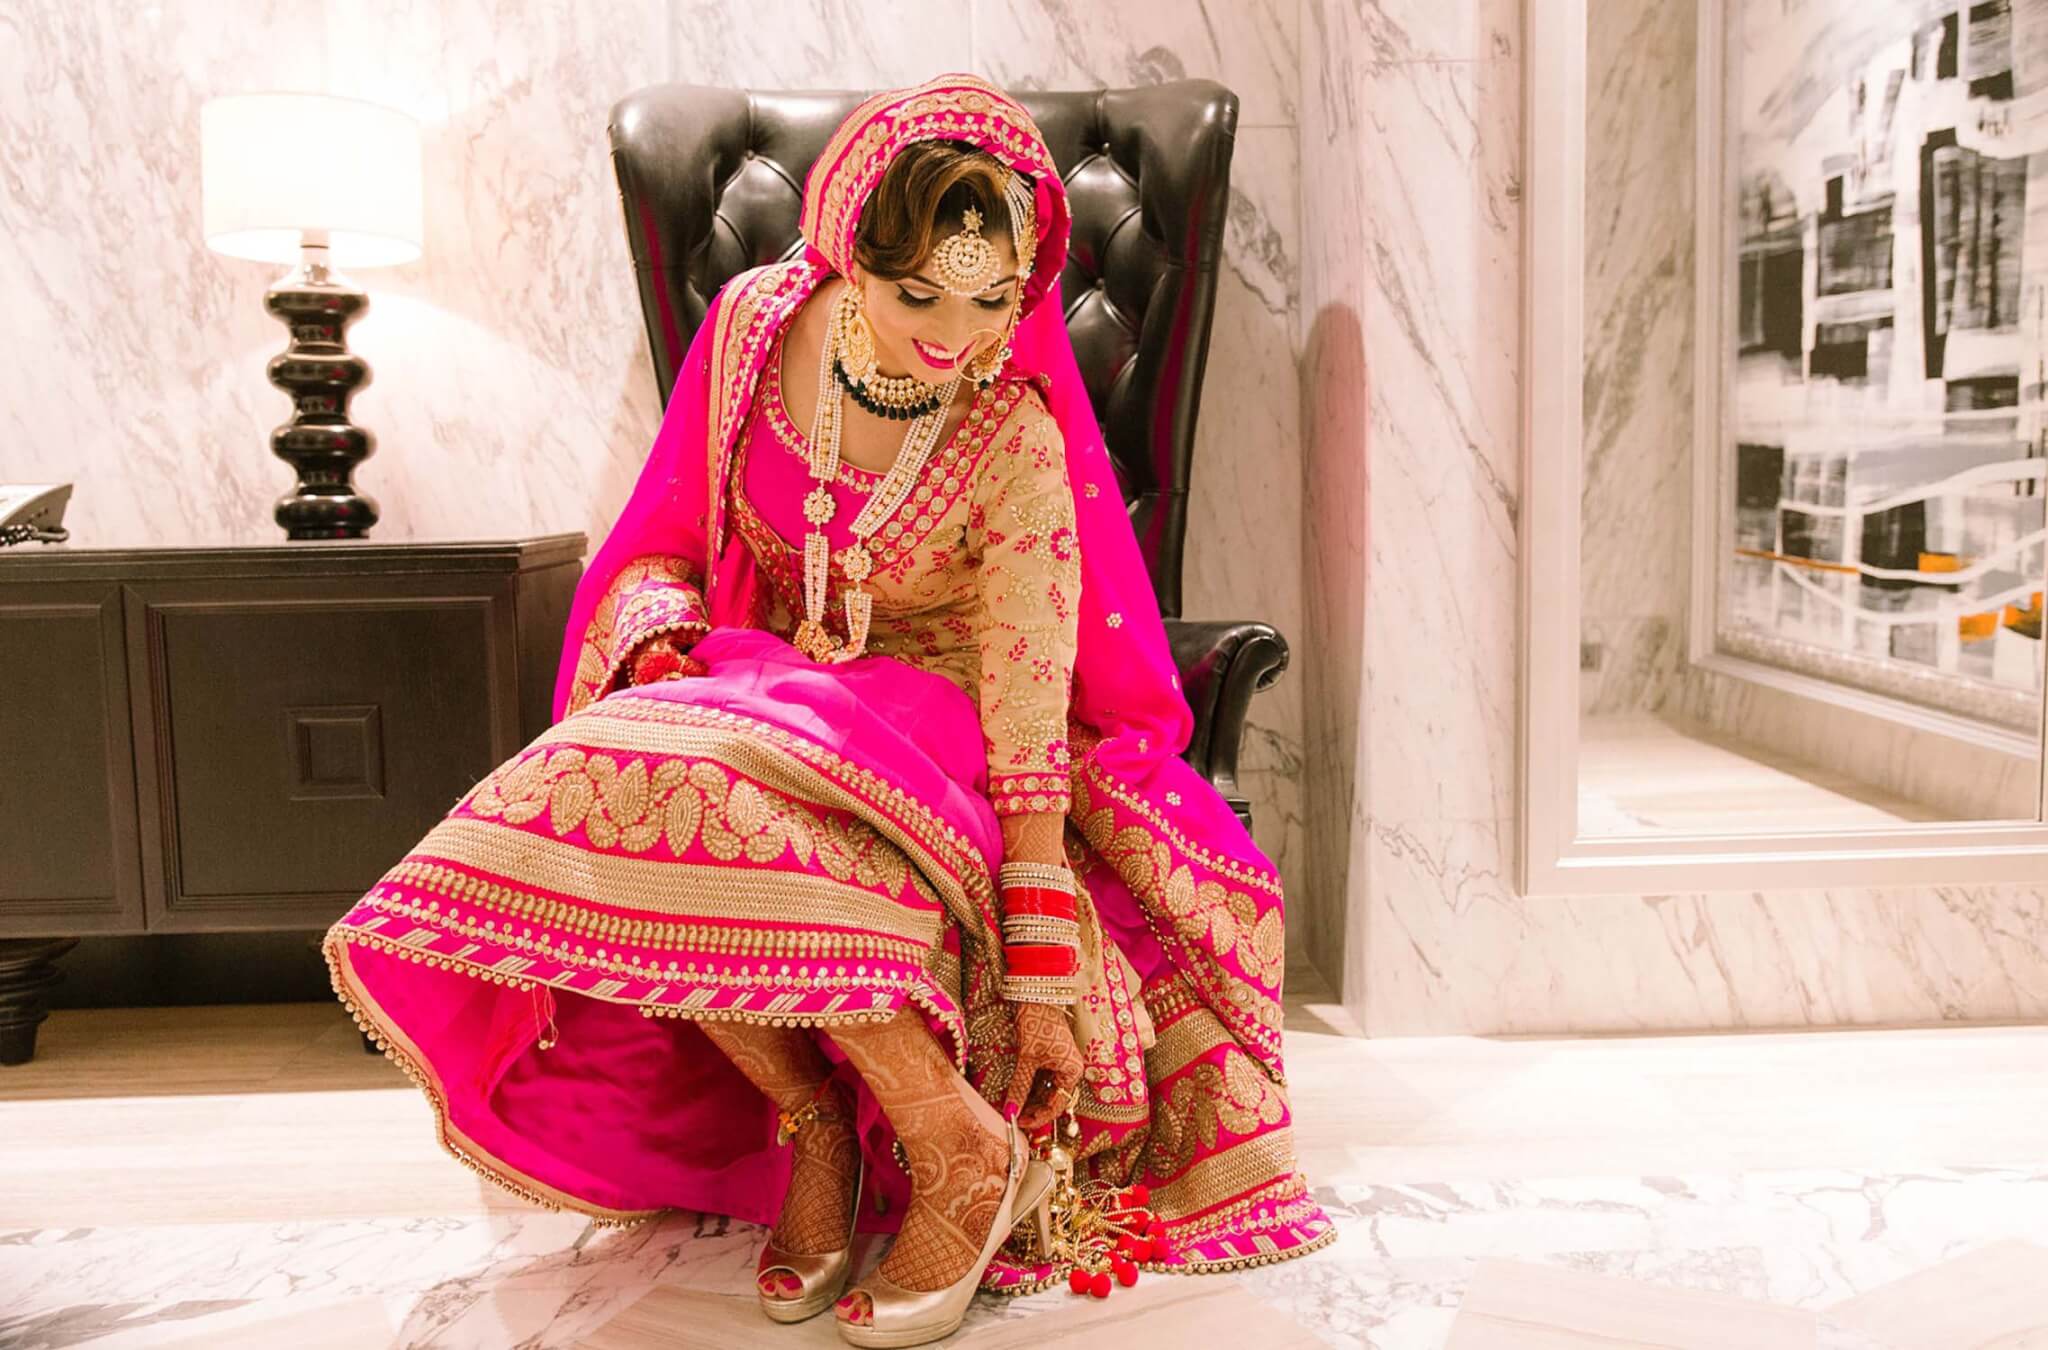 Best Indian Ottawa Wedding Makeup Artist and Bridal Makeup Toronto Brampton